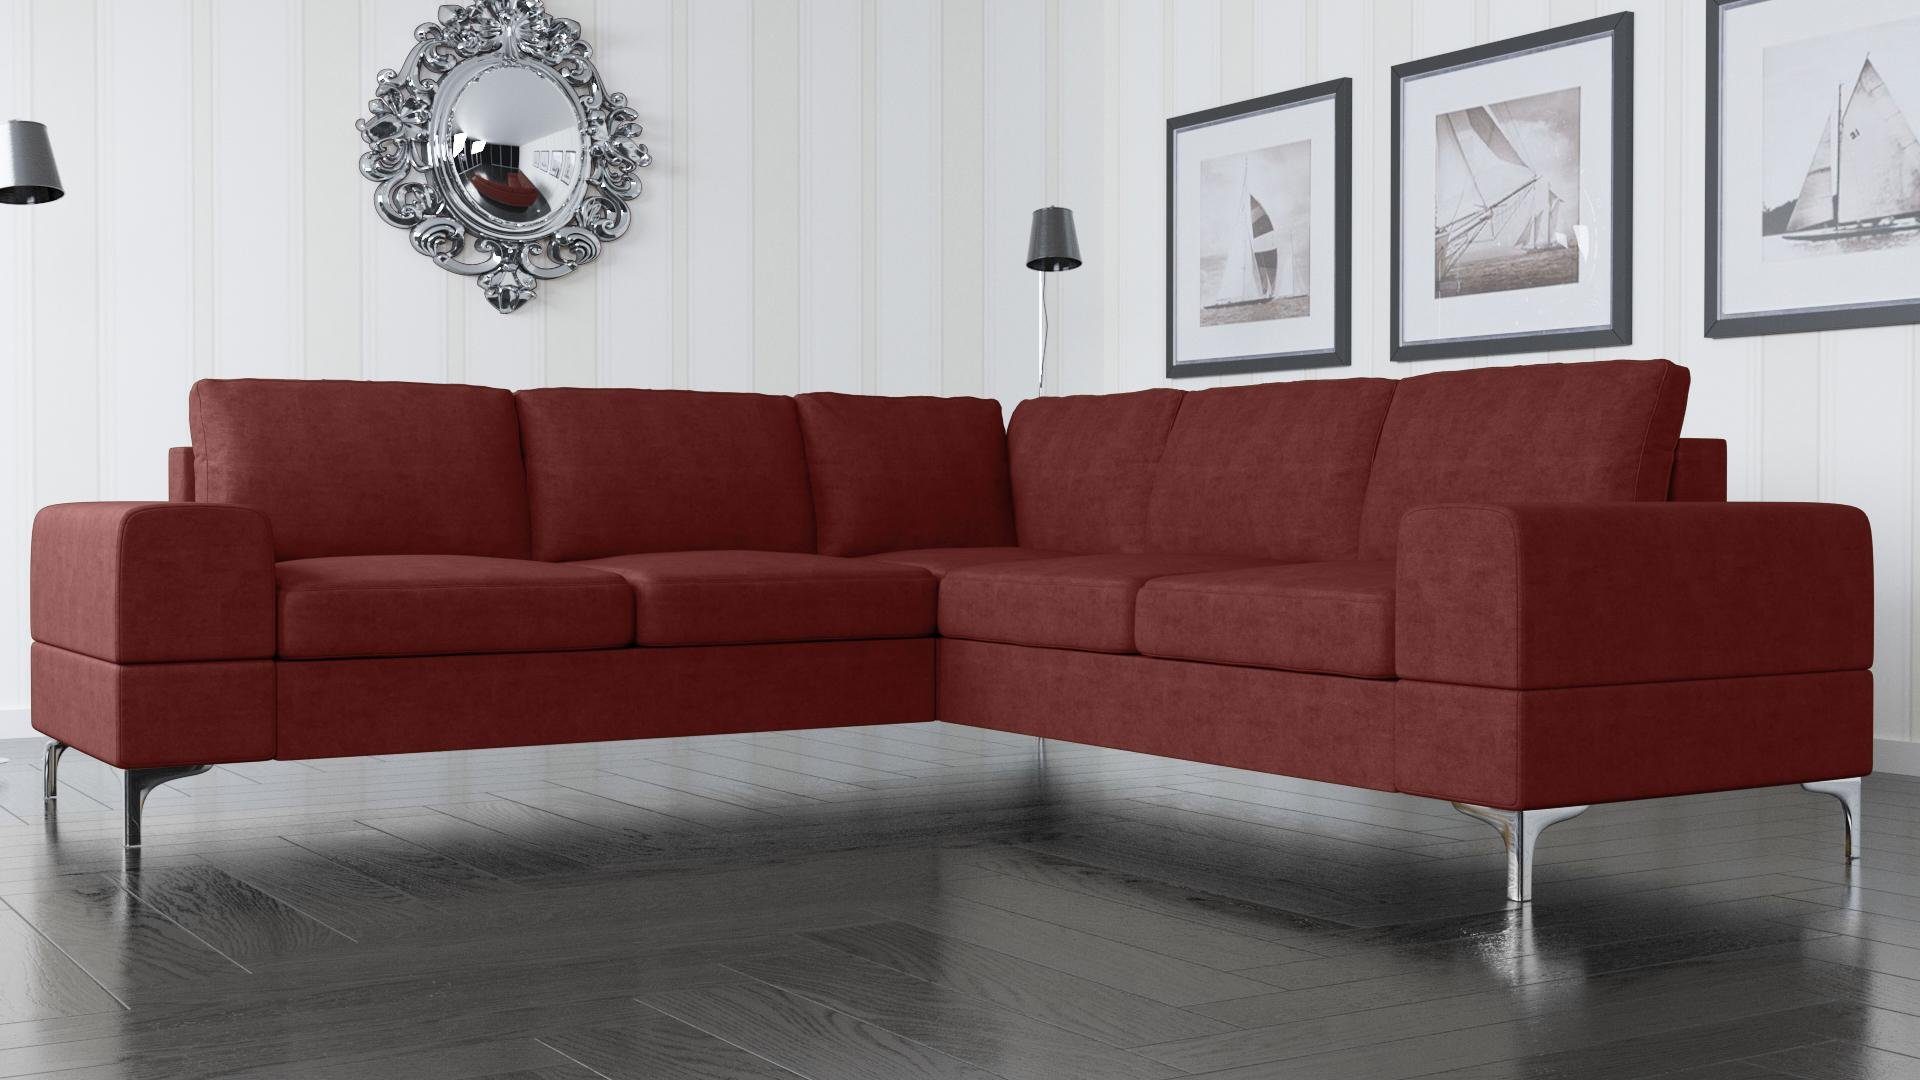 JVmoebel Ecksofa, Couch Ecksofa Textil Wohnzimmer Design Modern L-Form Türkis Möbel Rot